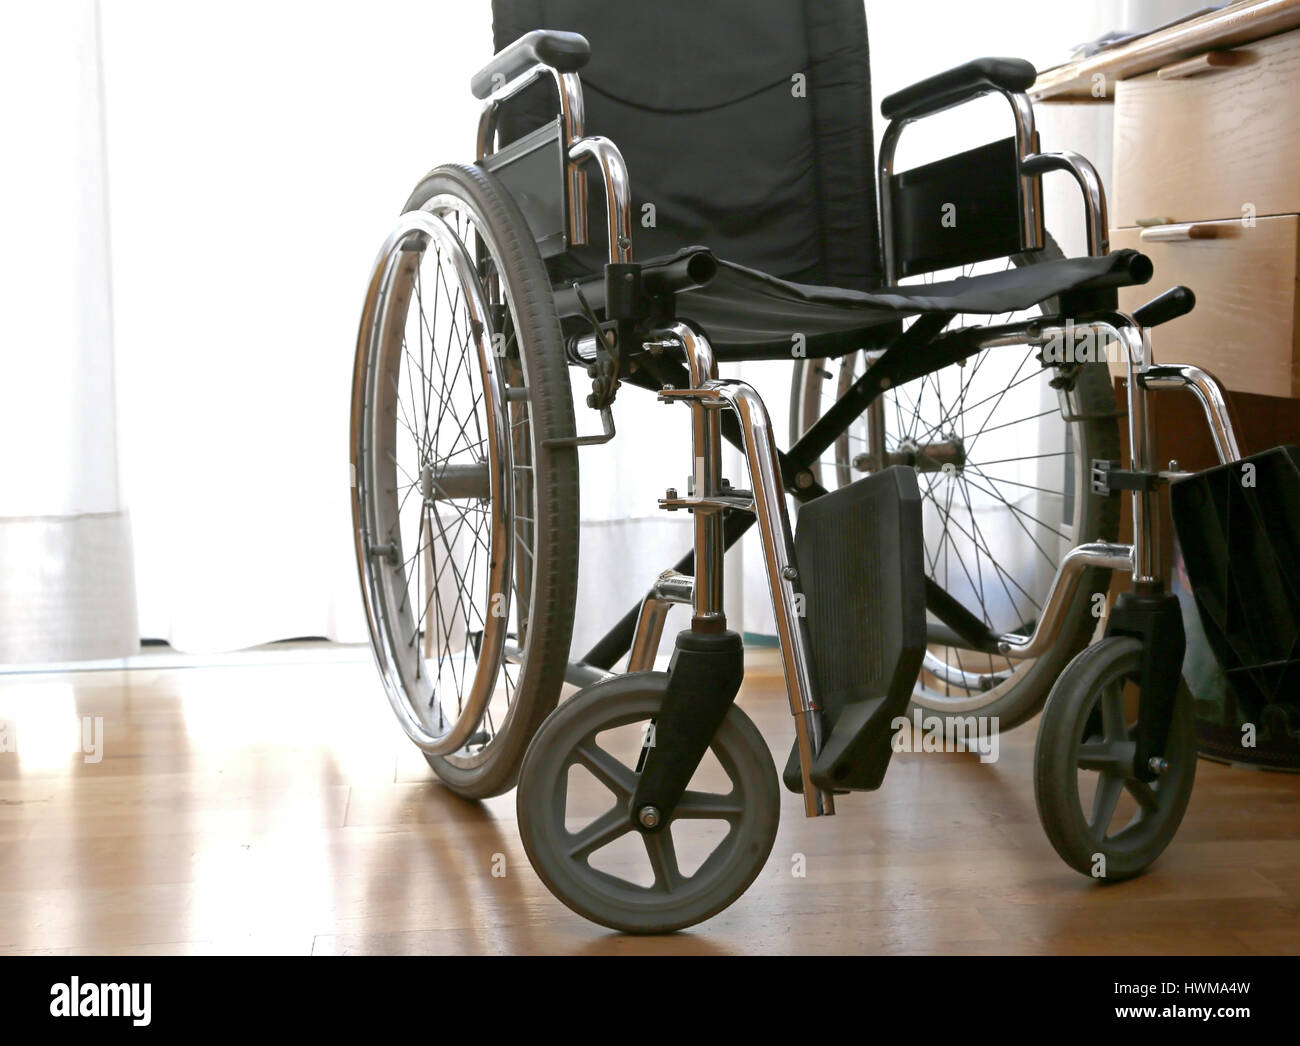 Carrozzina per disabili in una stanza con pavimento in parquet Foto Stock